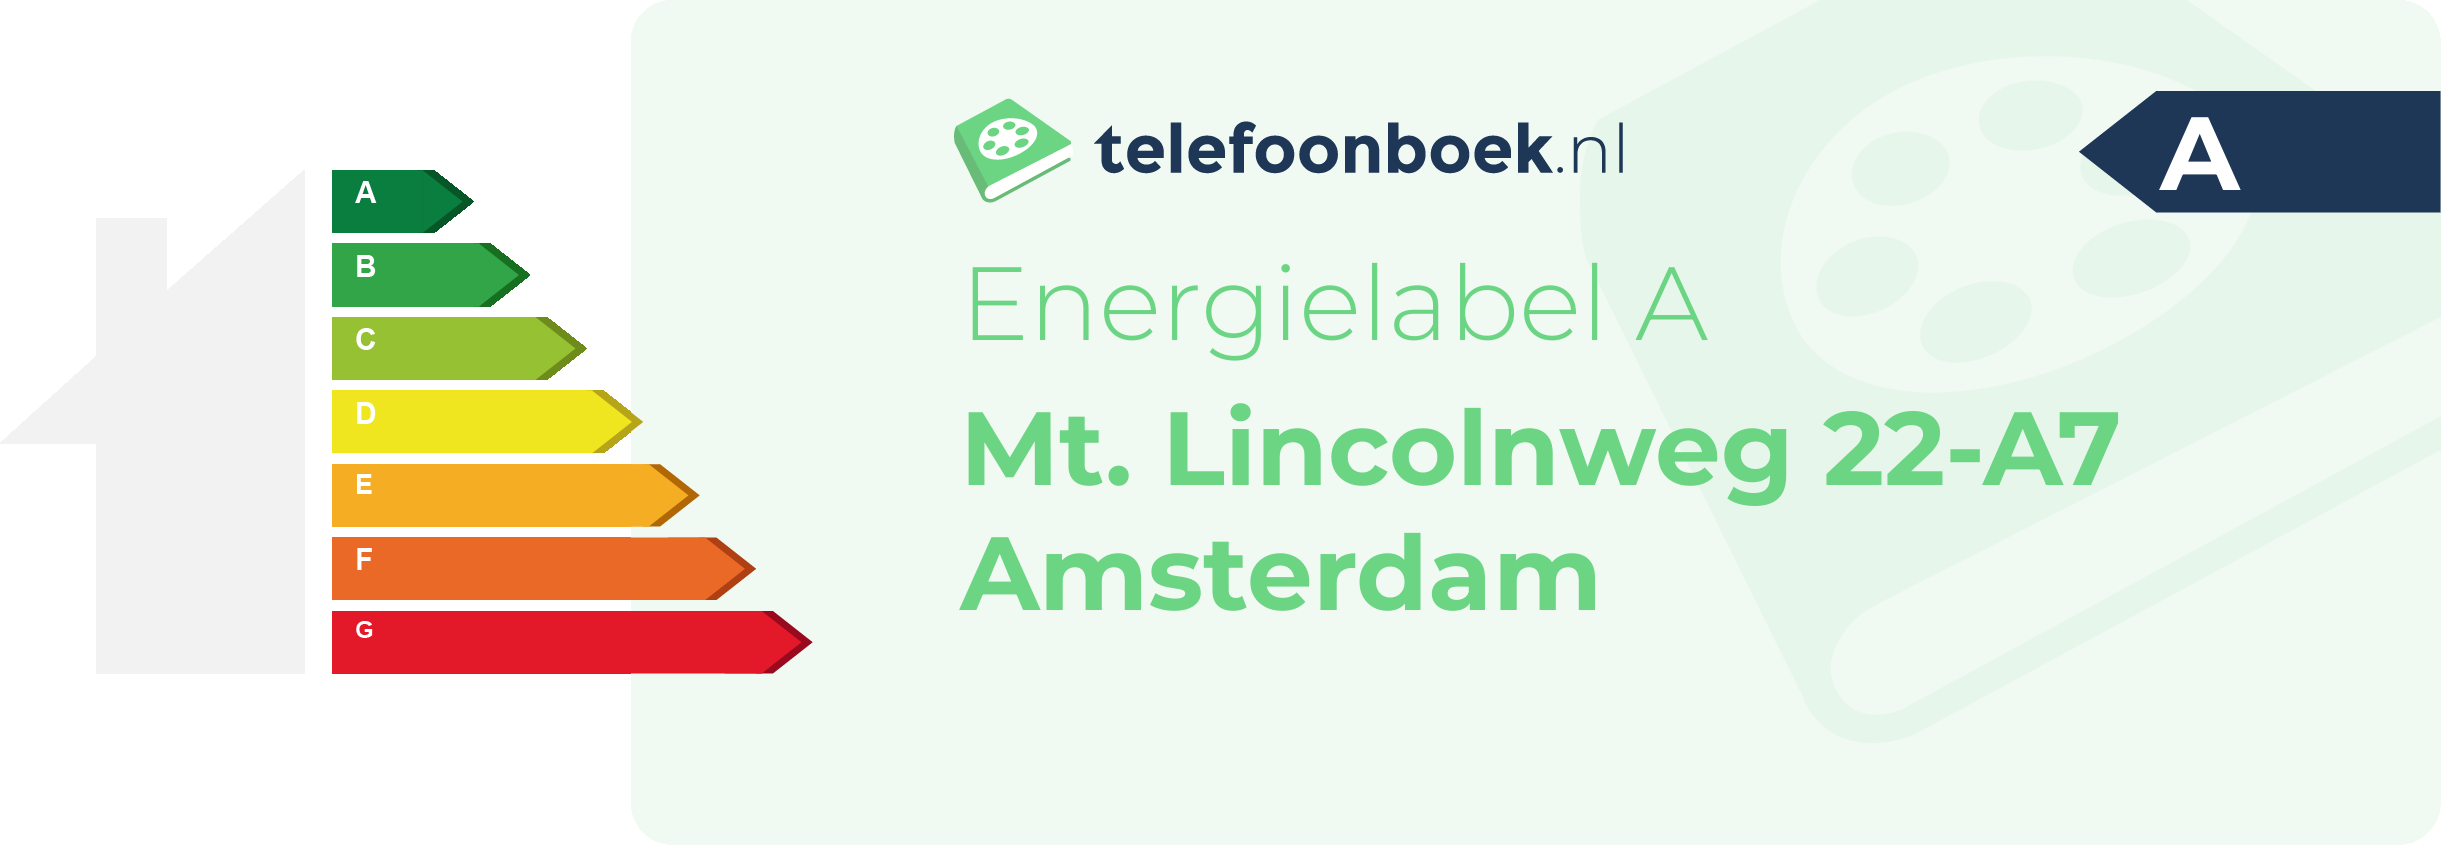 Energielabel Mt. Lincolnweg 22-A7 Amsterdam